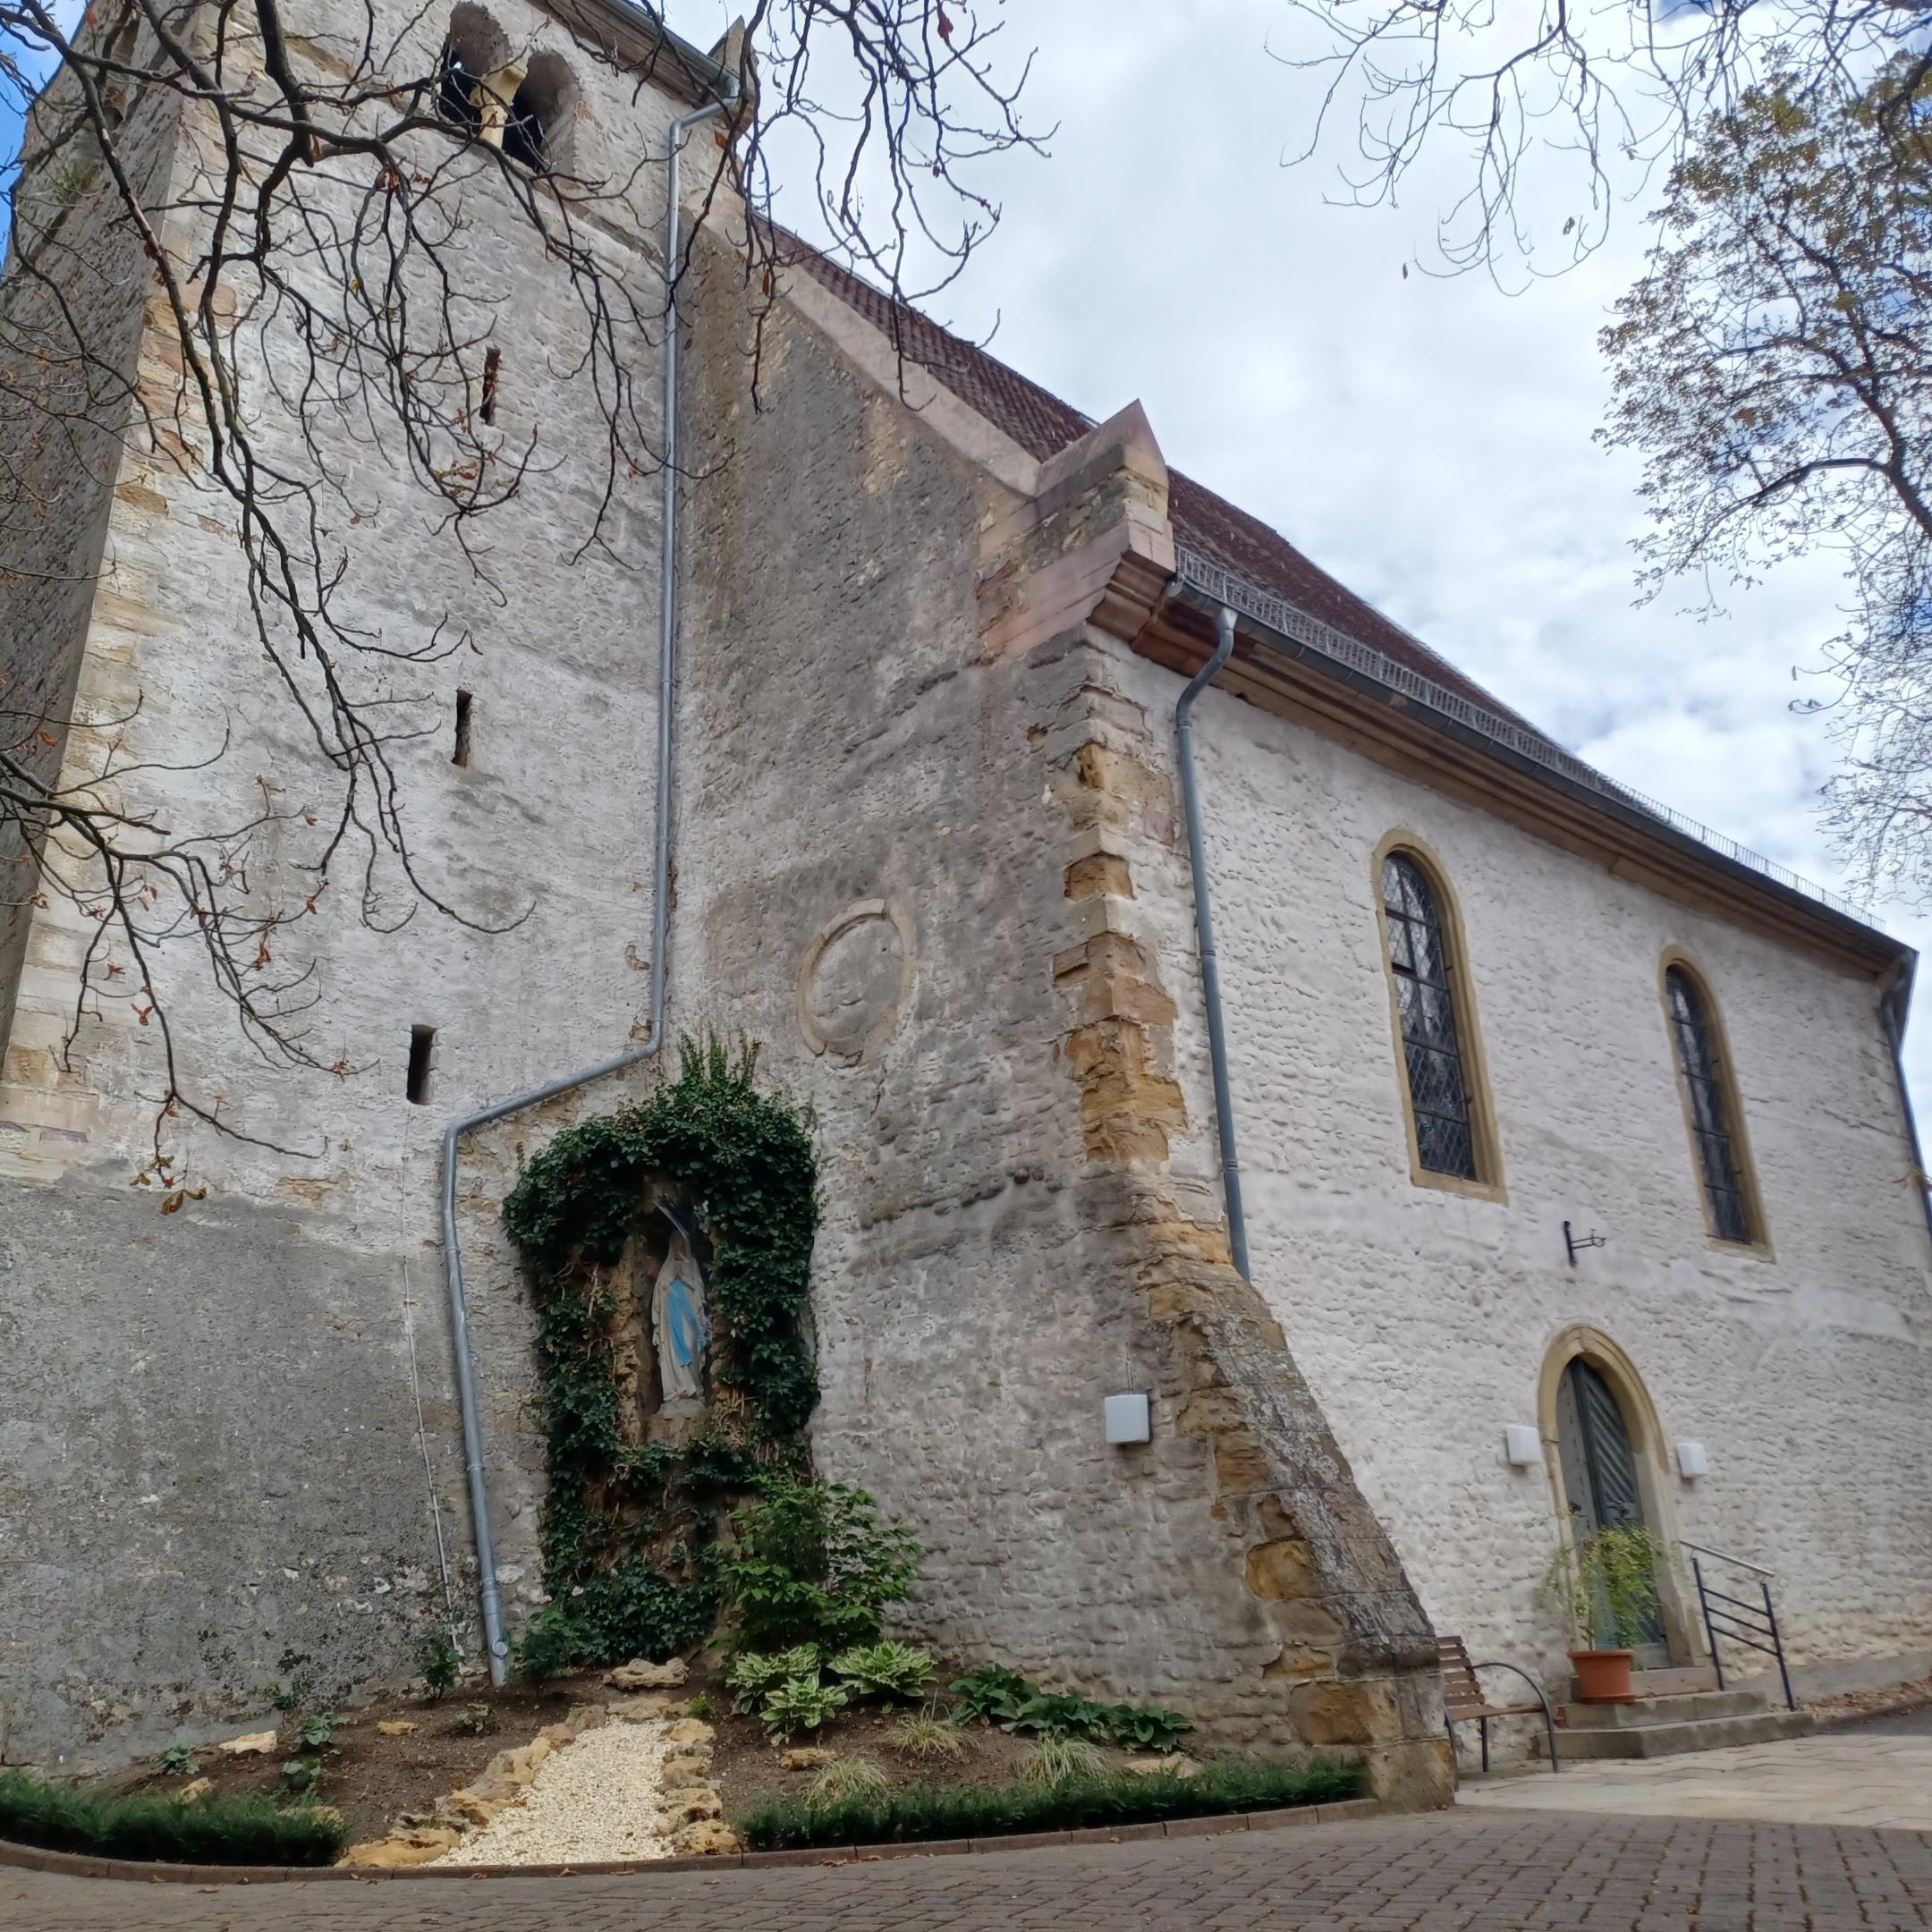 katholische Kirche St. Stephanus in Spiesheim